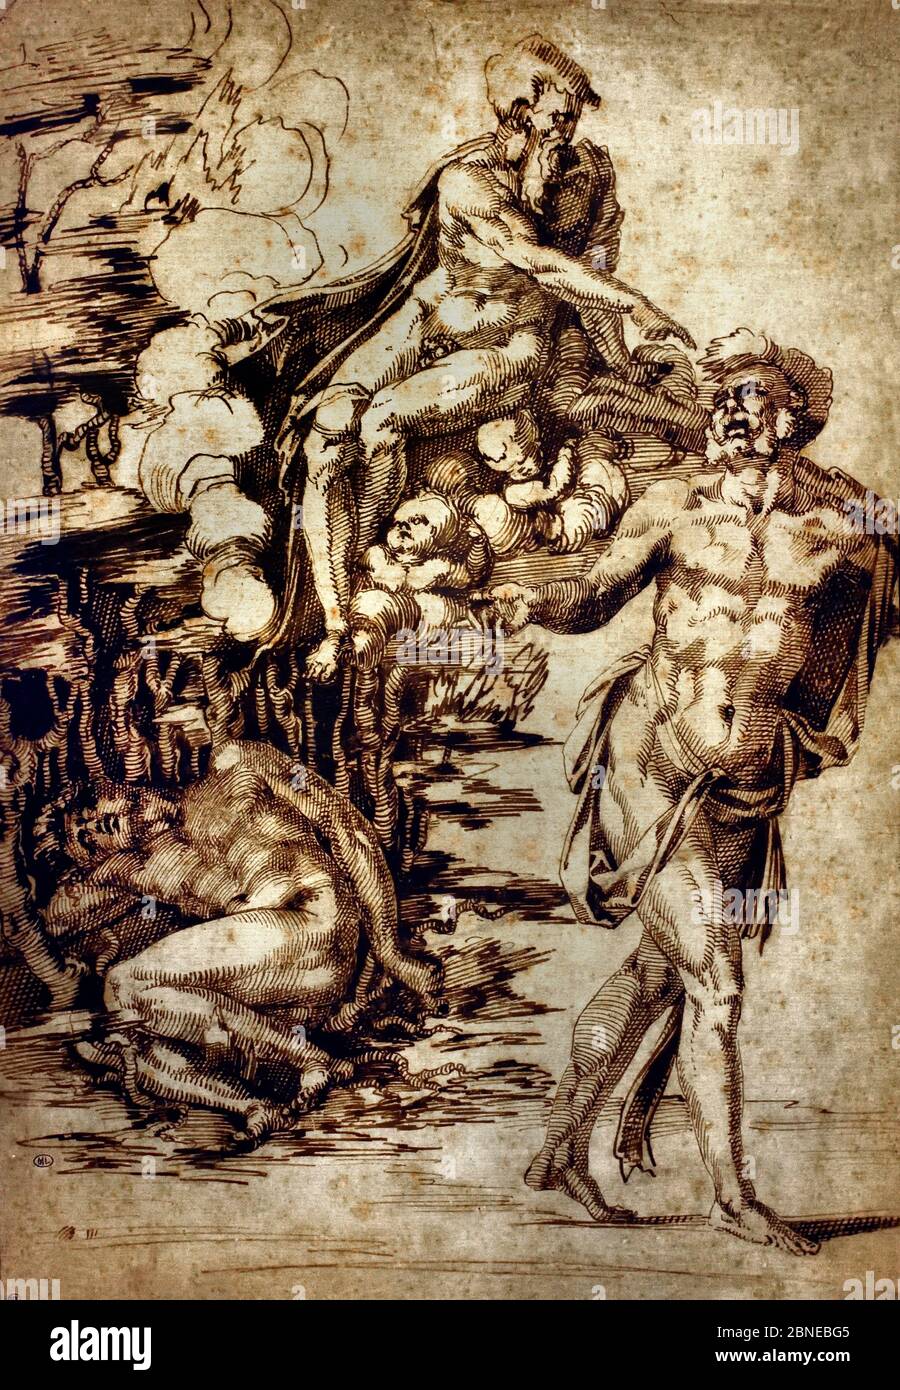 Caïn maudit par Dieu le Père pour le meurtre d'Abel par Baccio Bandinelli (Italien, Gaiole in Chianti 1493–1560 Florence) Italie Banque D'Images